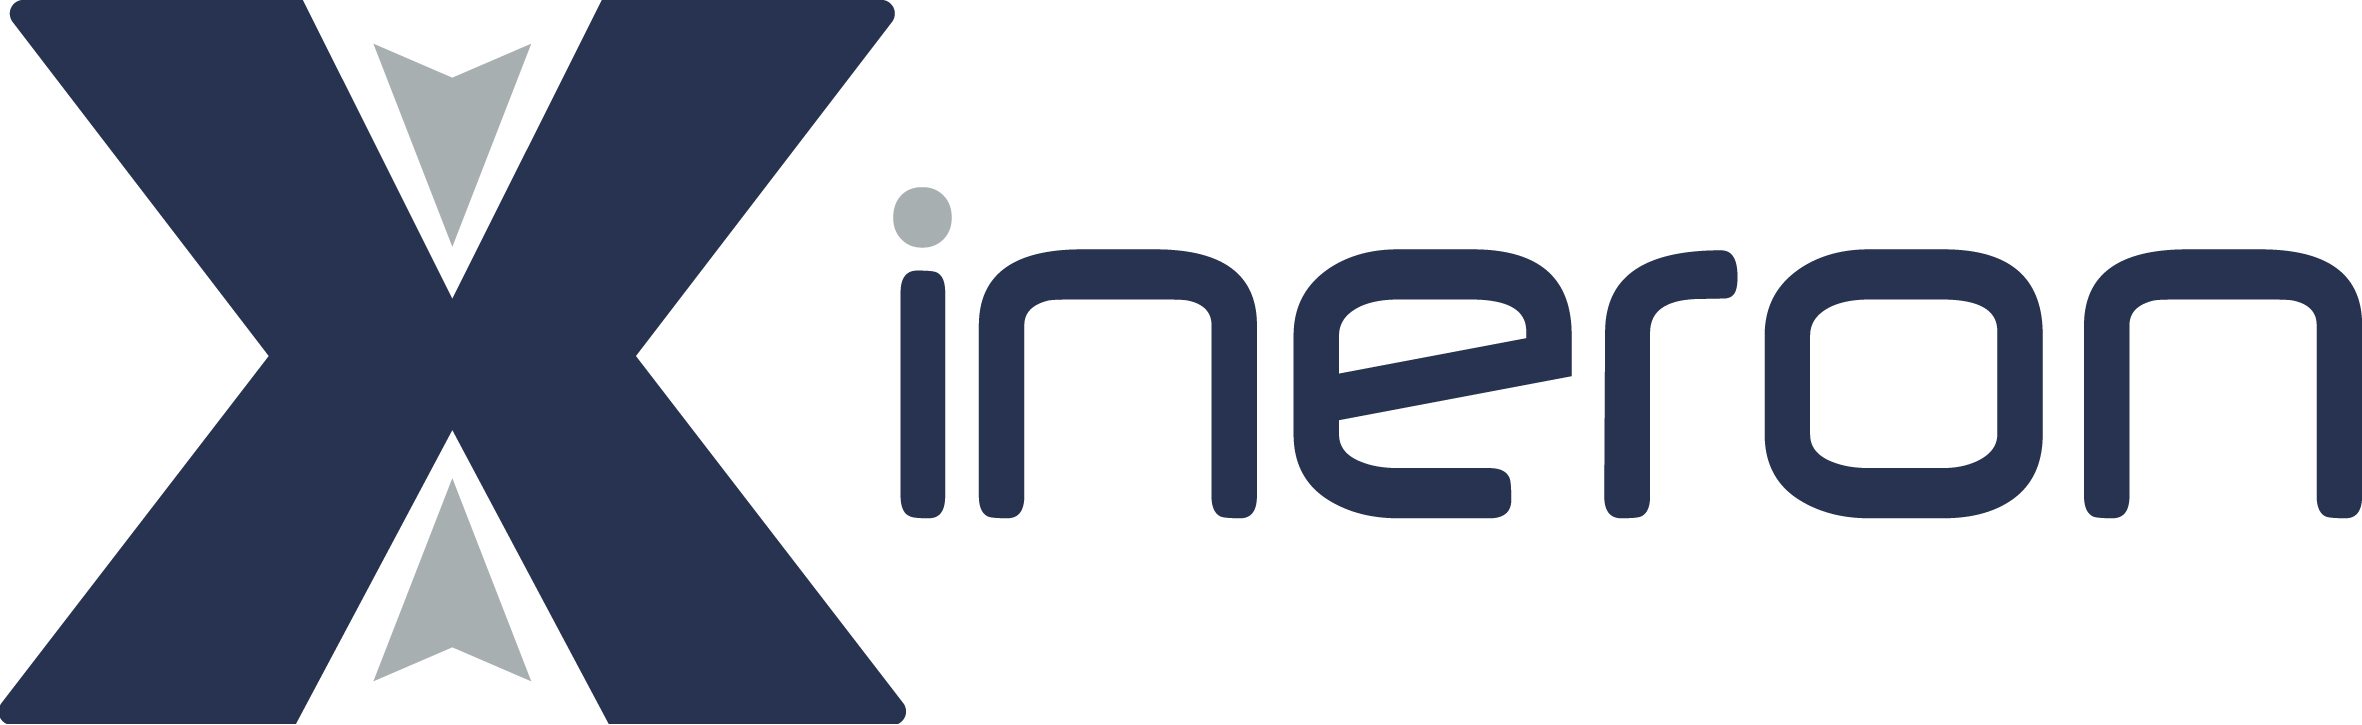 Xineron logo